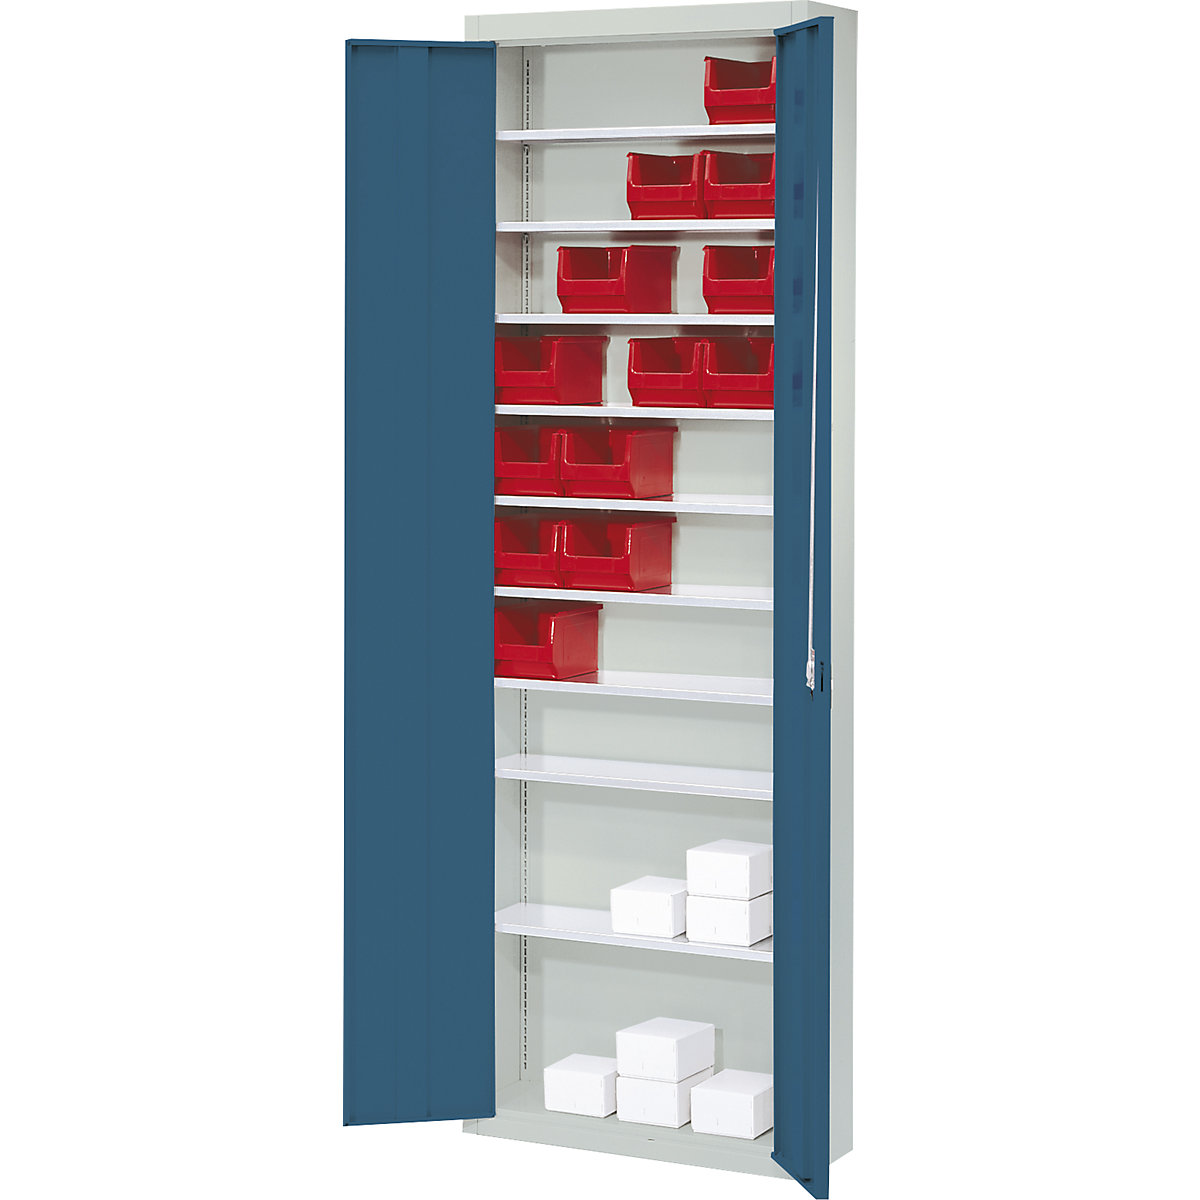 Rekesztároló szekrény, nyitott tárolódobozok nélkül – mauser, ma x szé x mé 2150 x 680 x 280 mm, kétszínű, szürke váz, kék ajtó-6